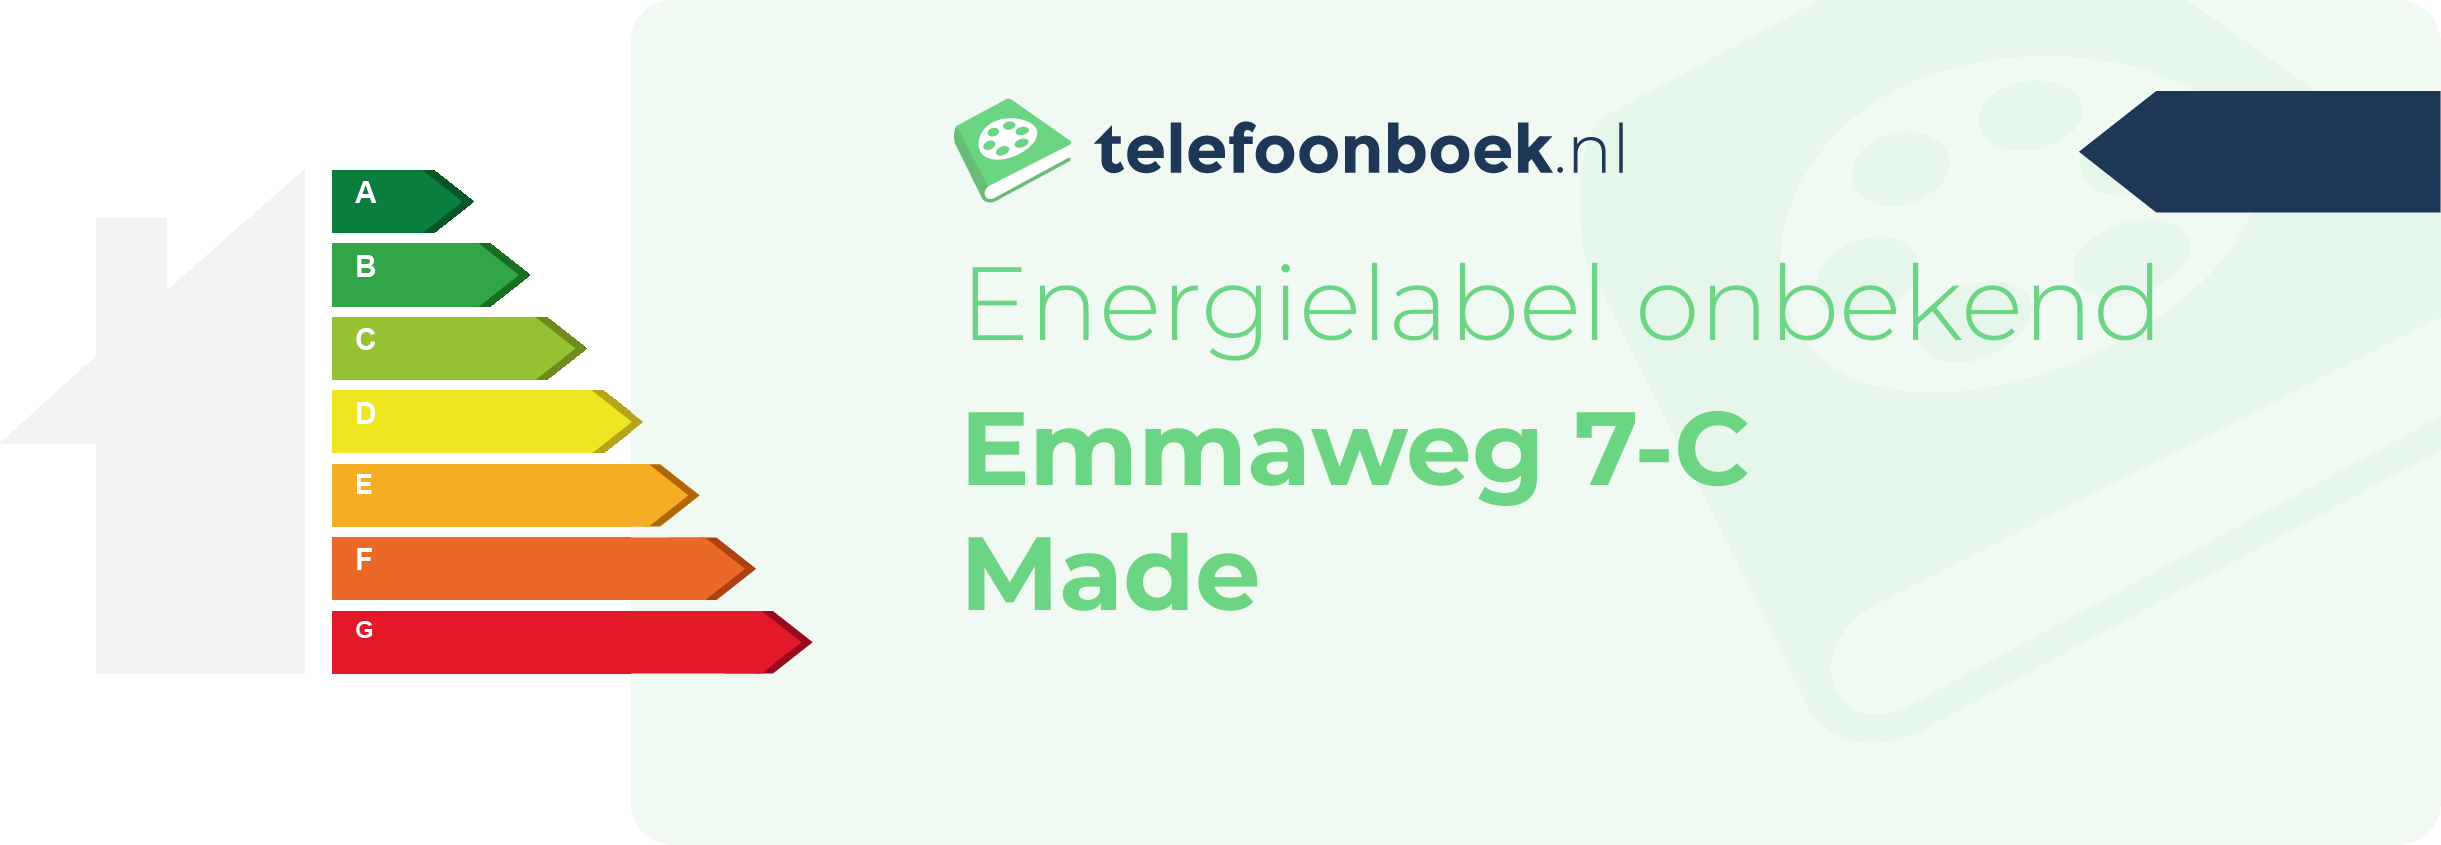 Energielabel Emmaweg 7-C Made